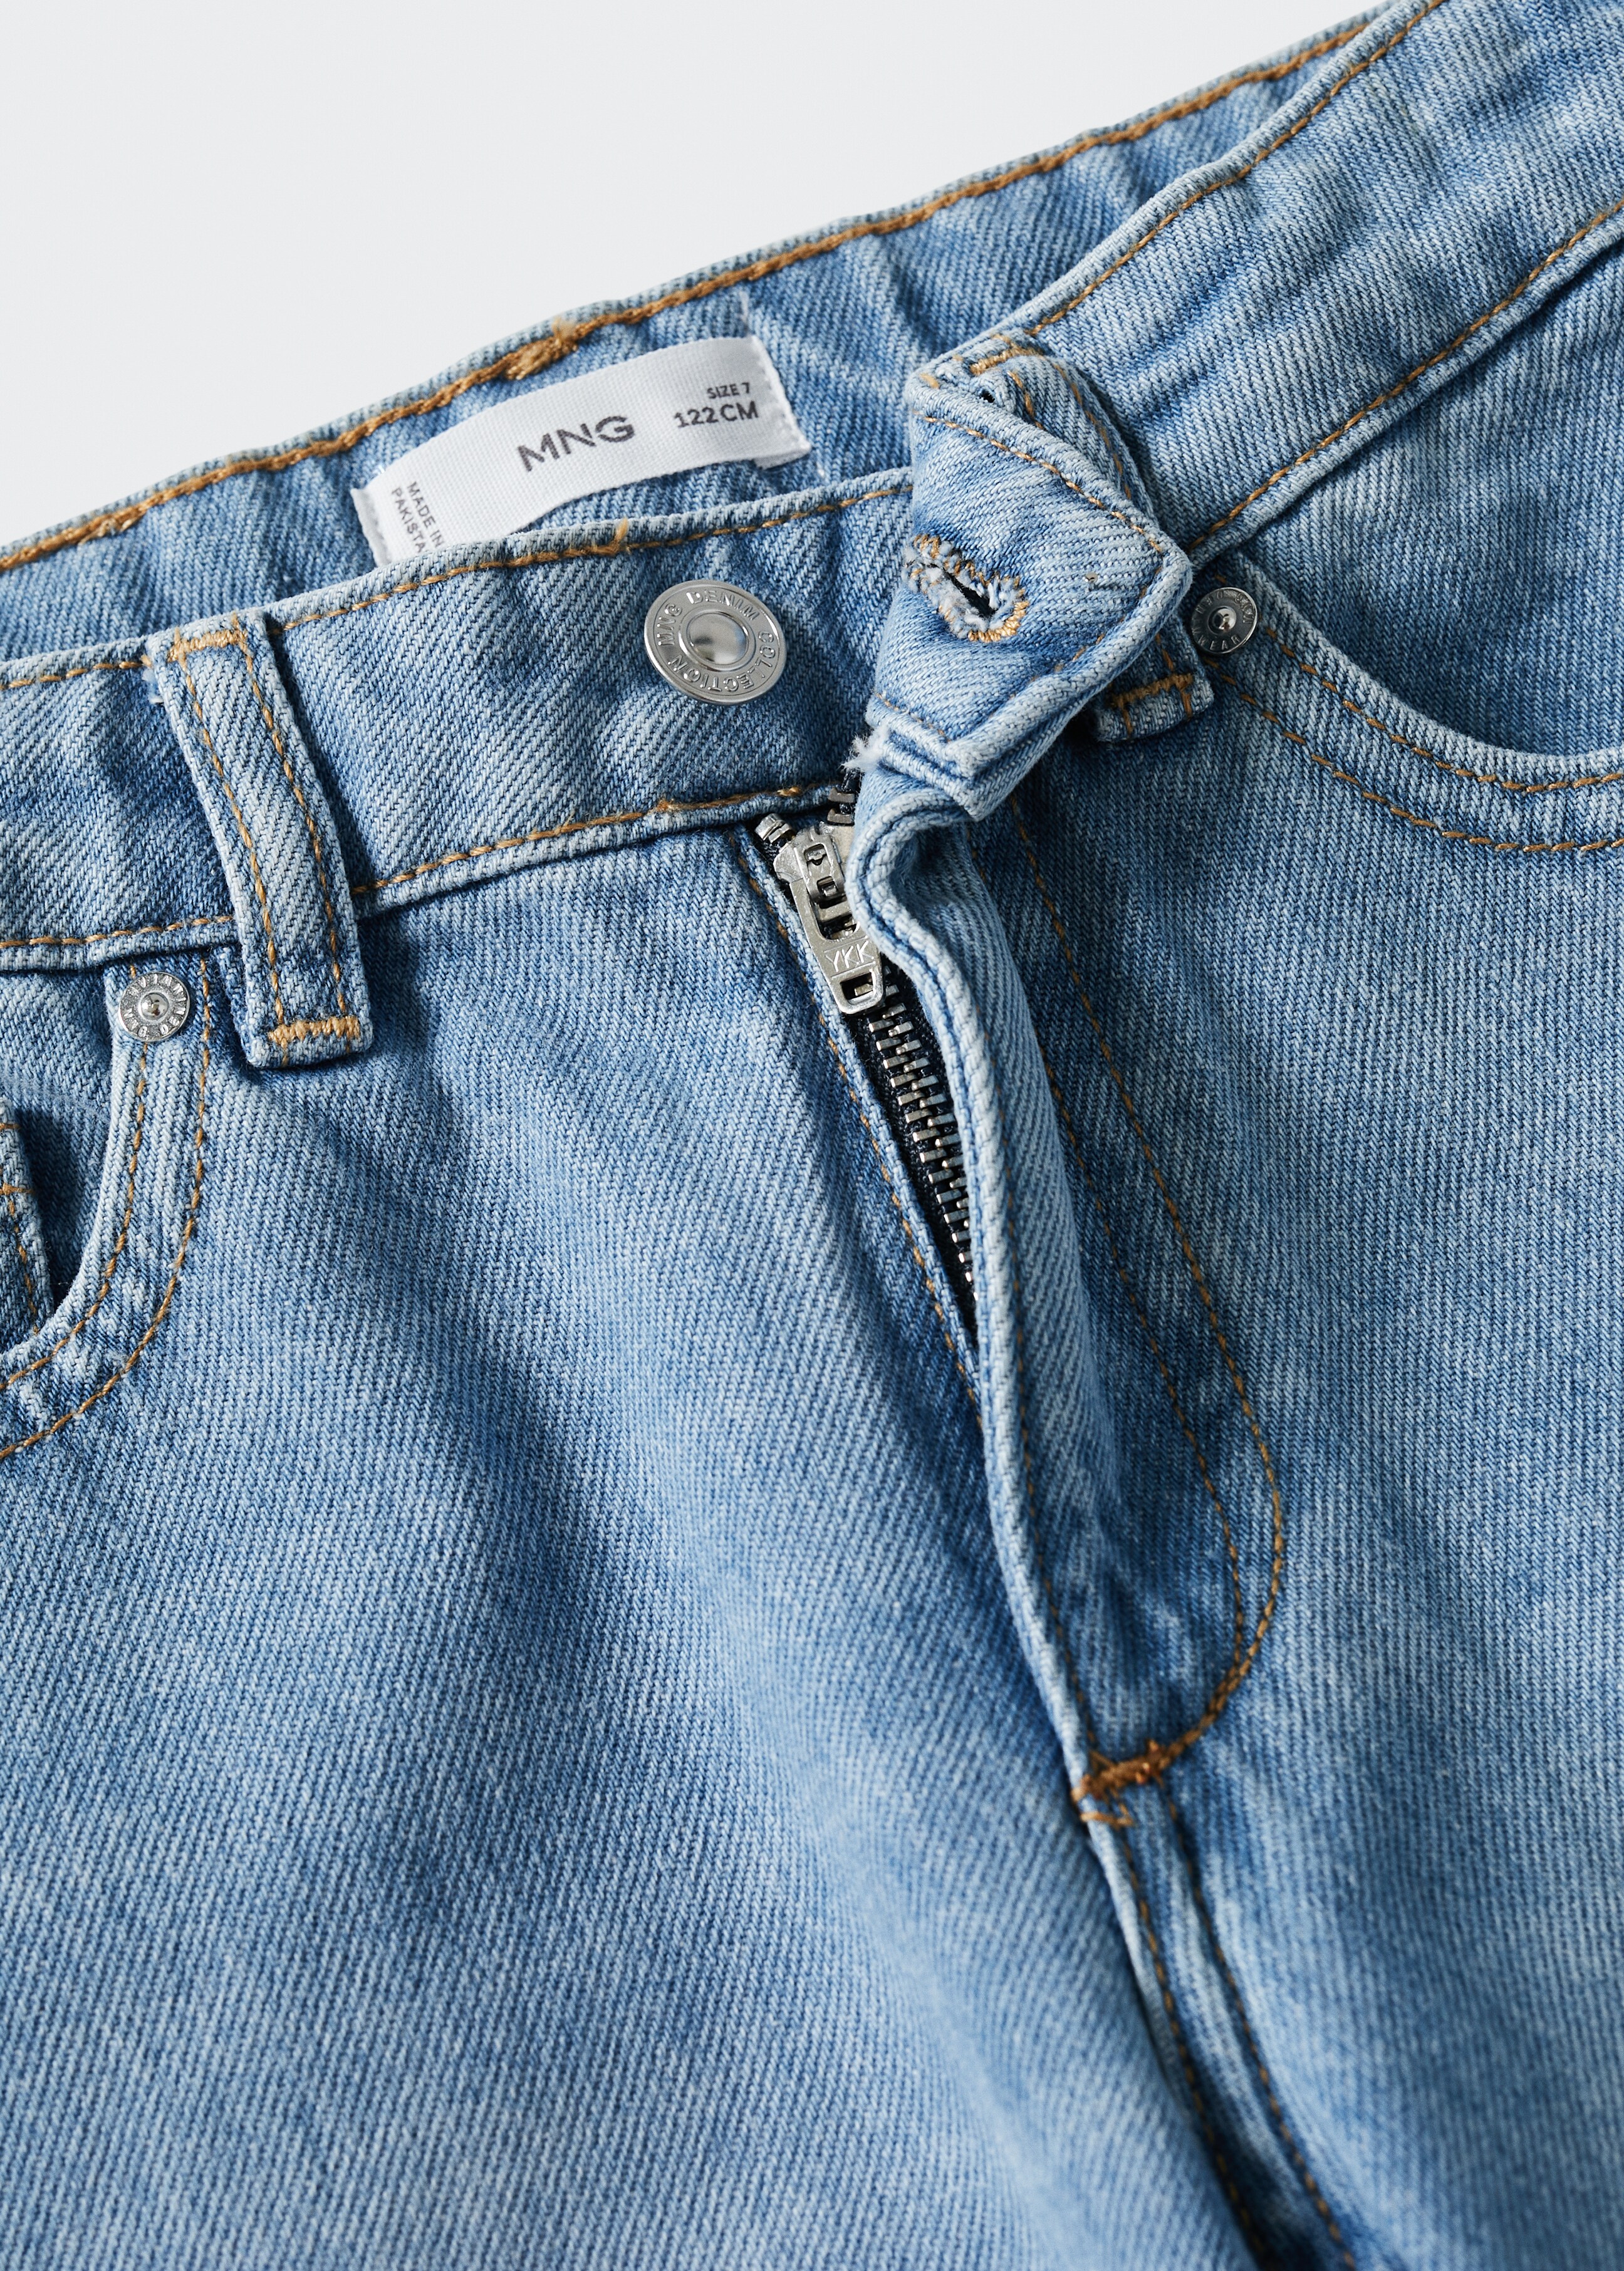 Culotte-Jeans - Detail des Artikels 8